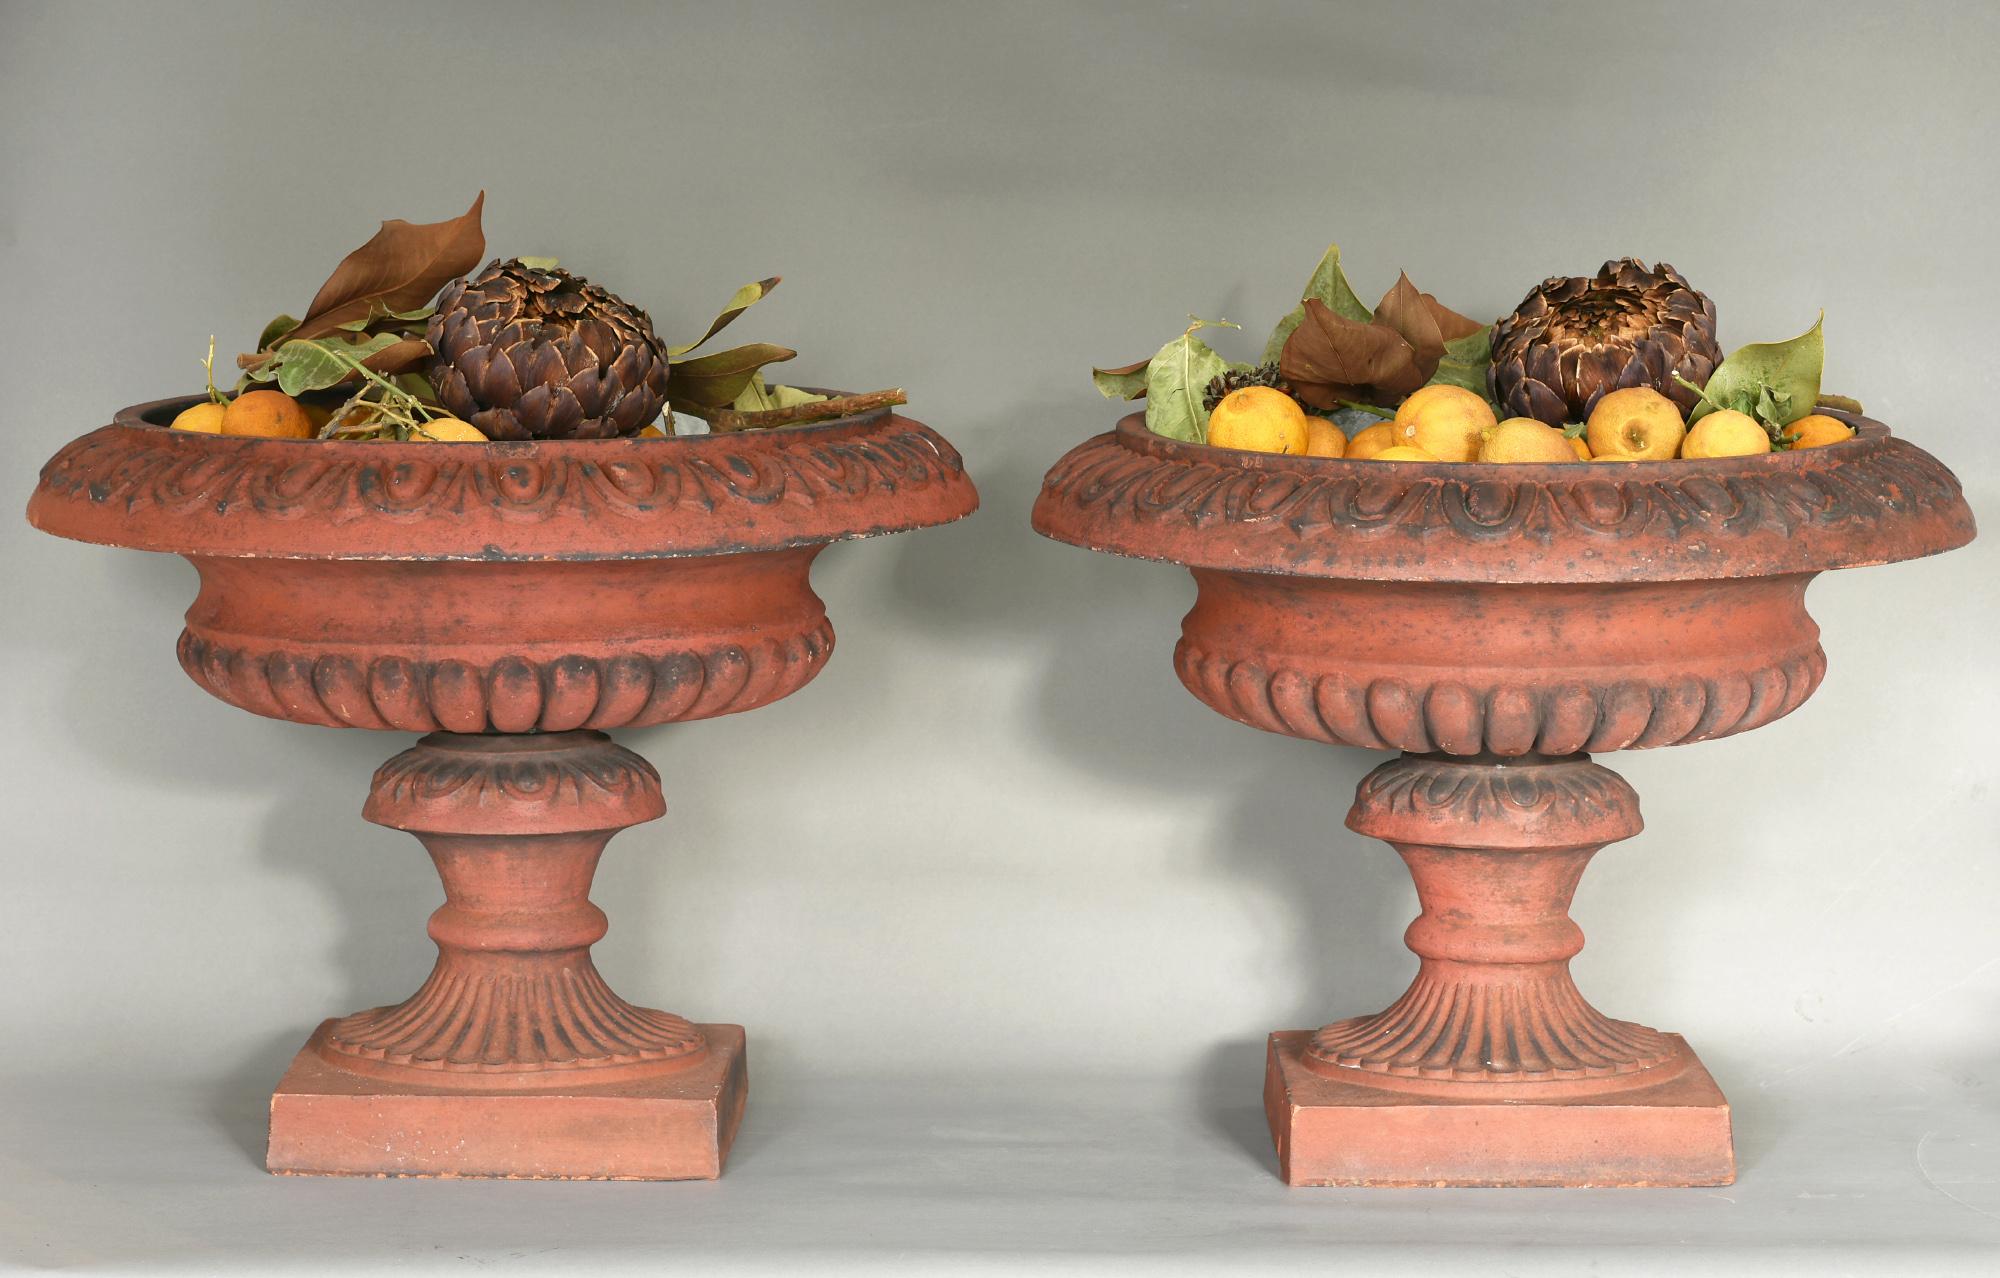 Une paire particulièrement belle de vases en terre cuite fabriqués en Angleterre, vers 1900.
La paire est très bien travaillée et se compose de deux parties, comme vous pouvez le voir sur les photos. Ce sont deux objets très décoratifs dans un